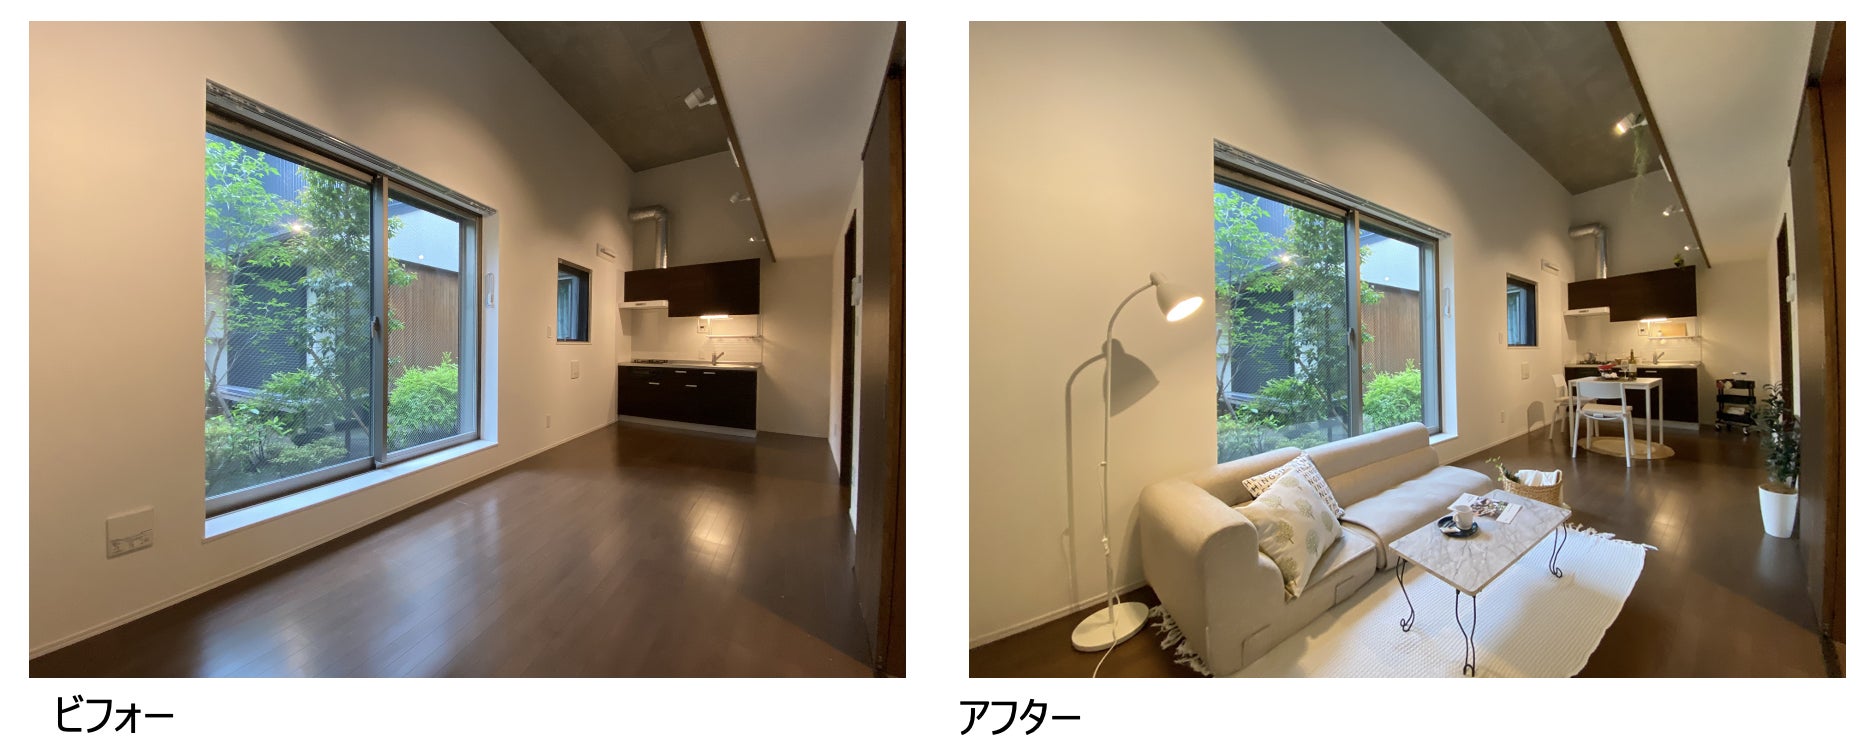 ホームステージングの効果を実例で競う日本唯一のイベント「第7回ホームステージングコンテスト」受賞者決定のサブ画像8